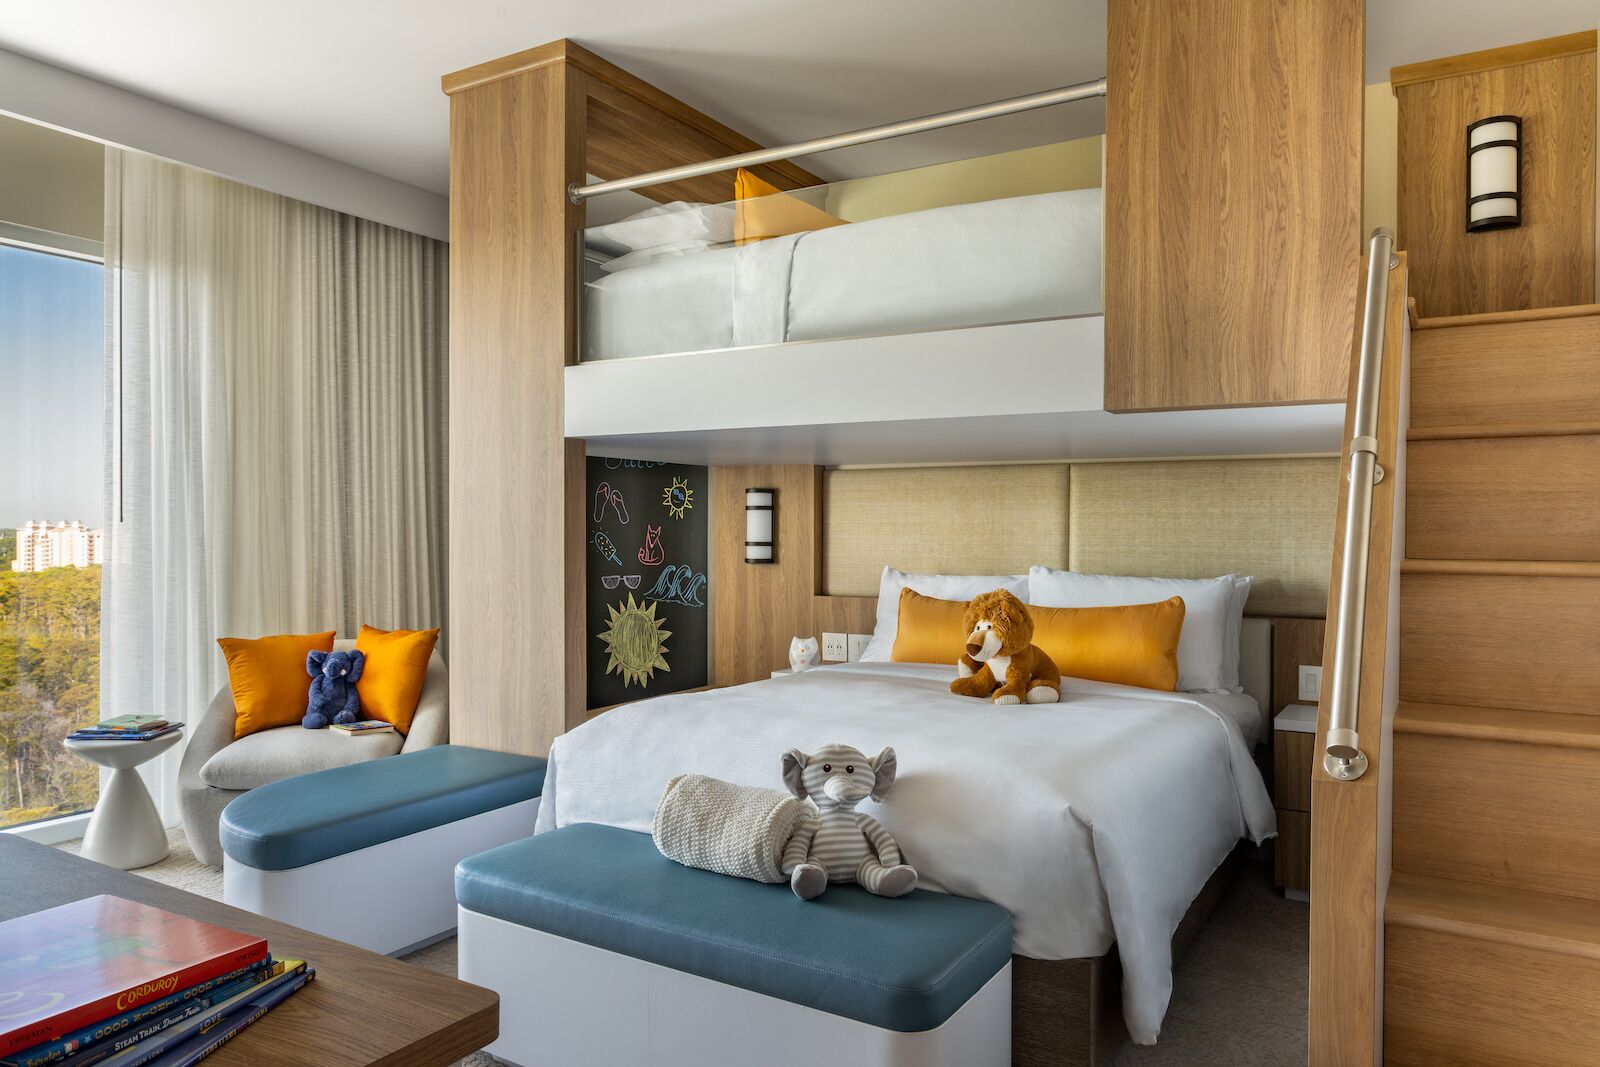 jw marriott disney world - bunk bed suite